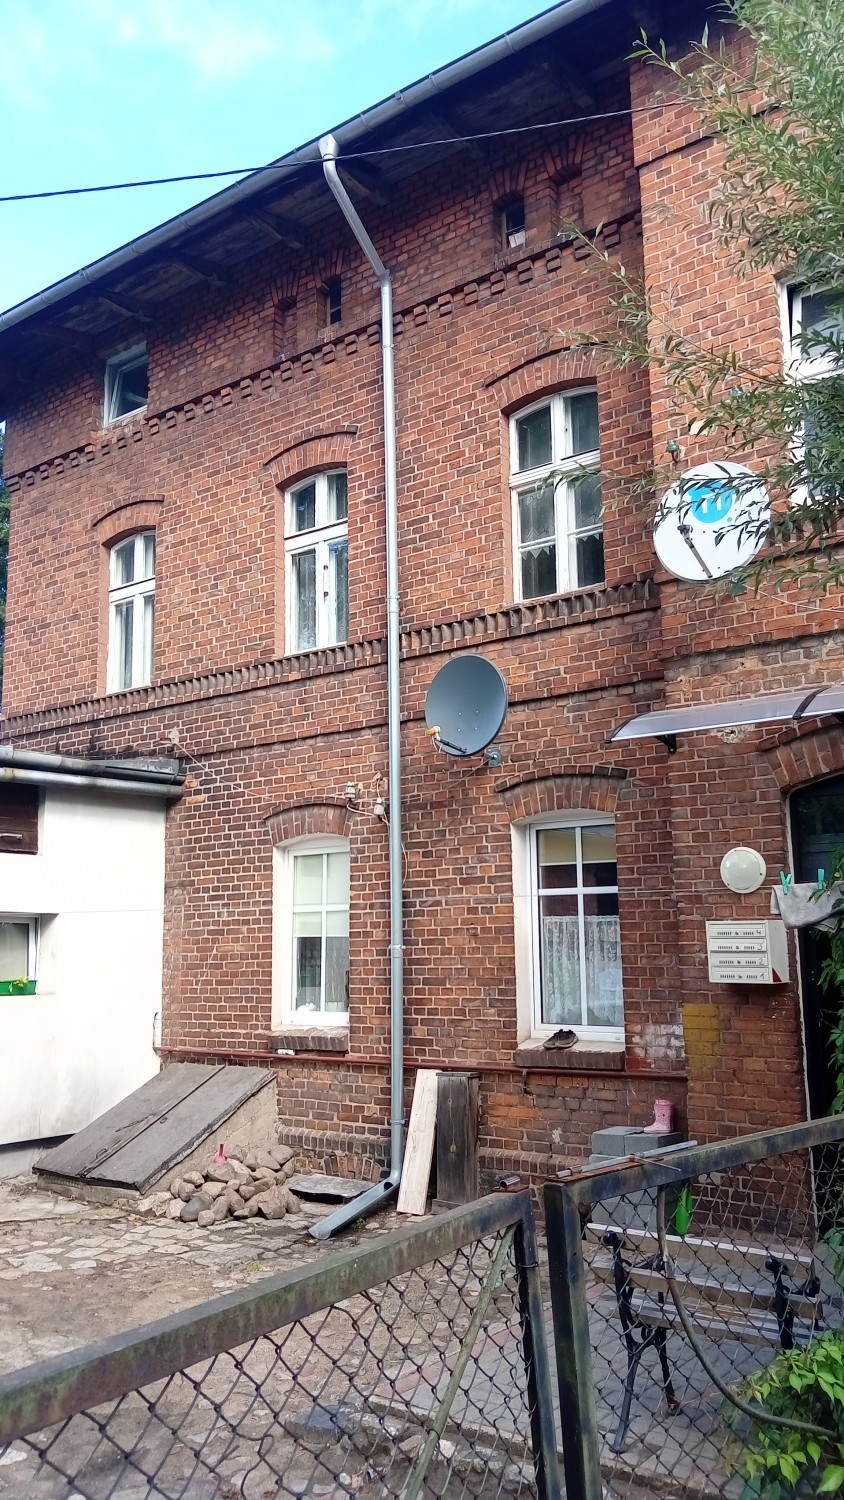 Działki, lokale biurowe i mieszkania od PKP. Oto oferty z Kwidzyna, Sztumu i Malborka